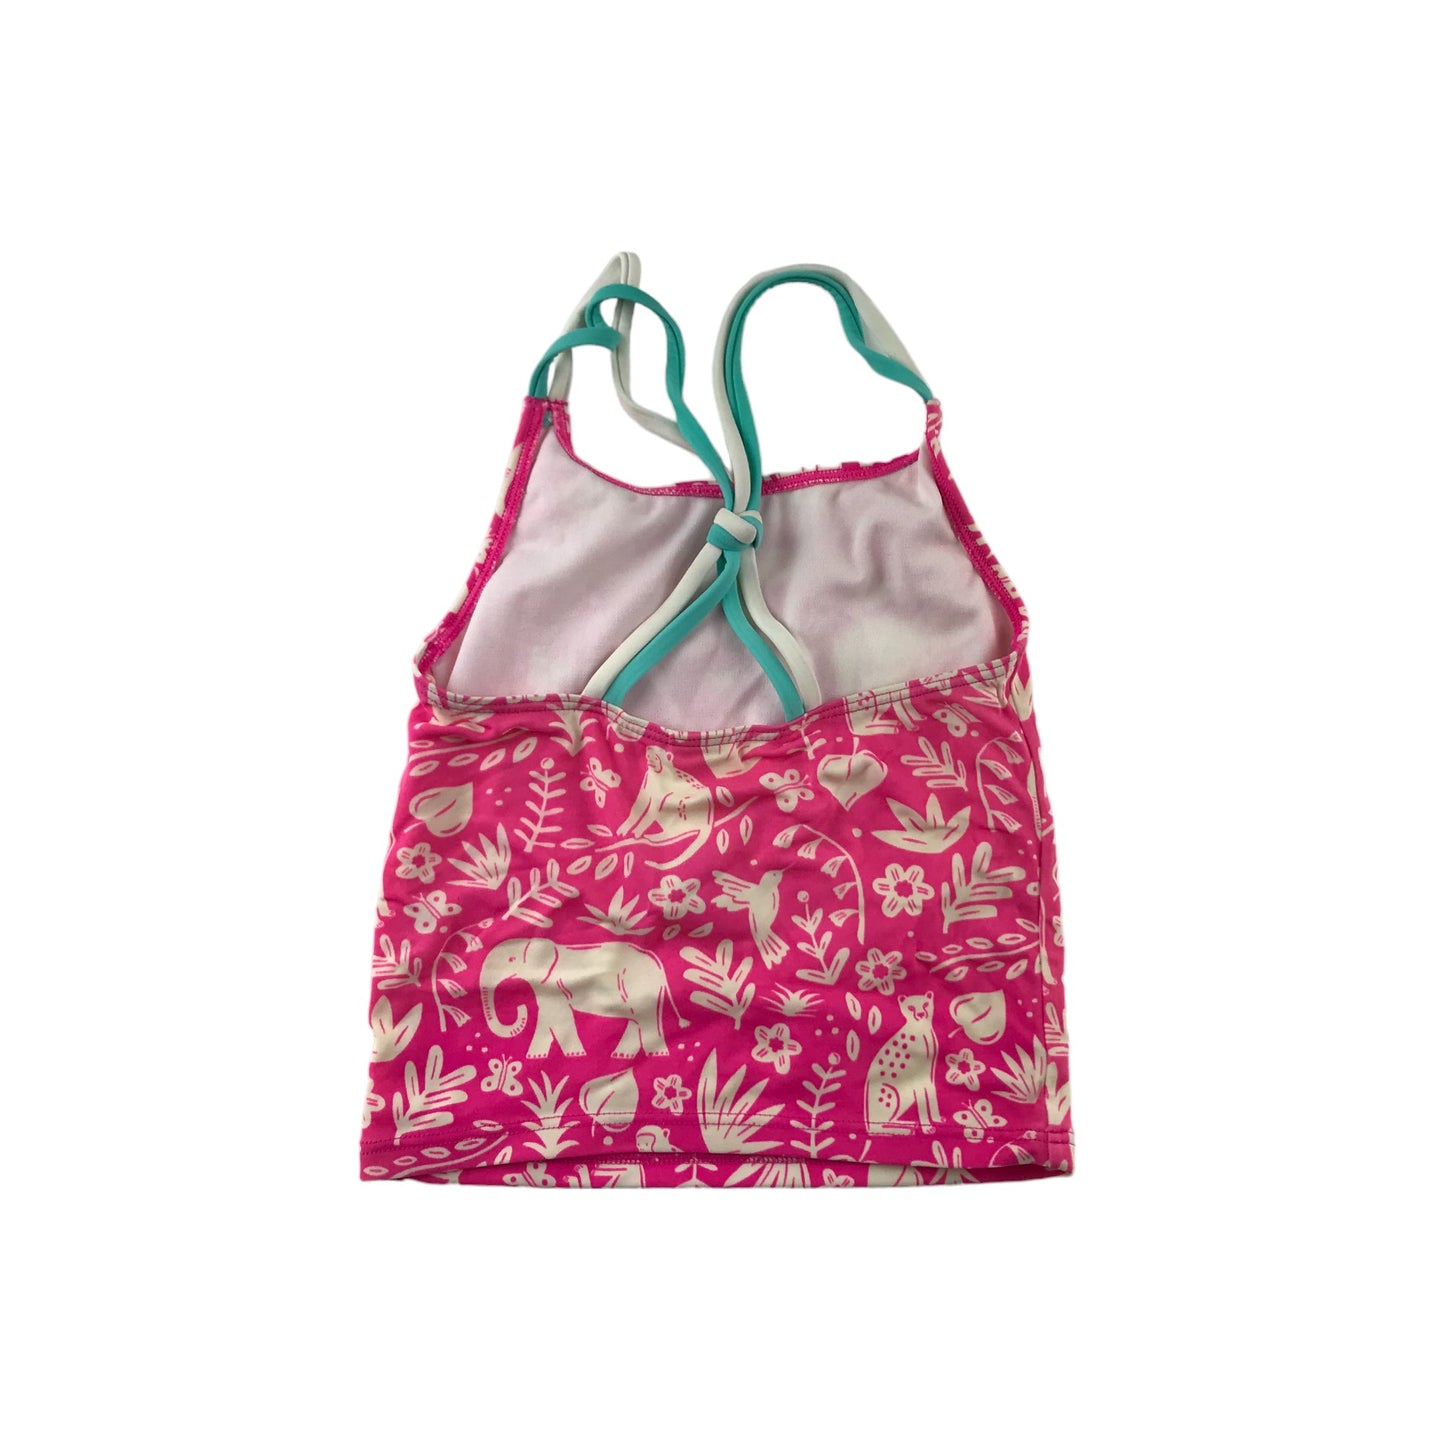 Mini Boden Swim Suit Age 6 Pink Floral Animals 2-piece Set